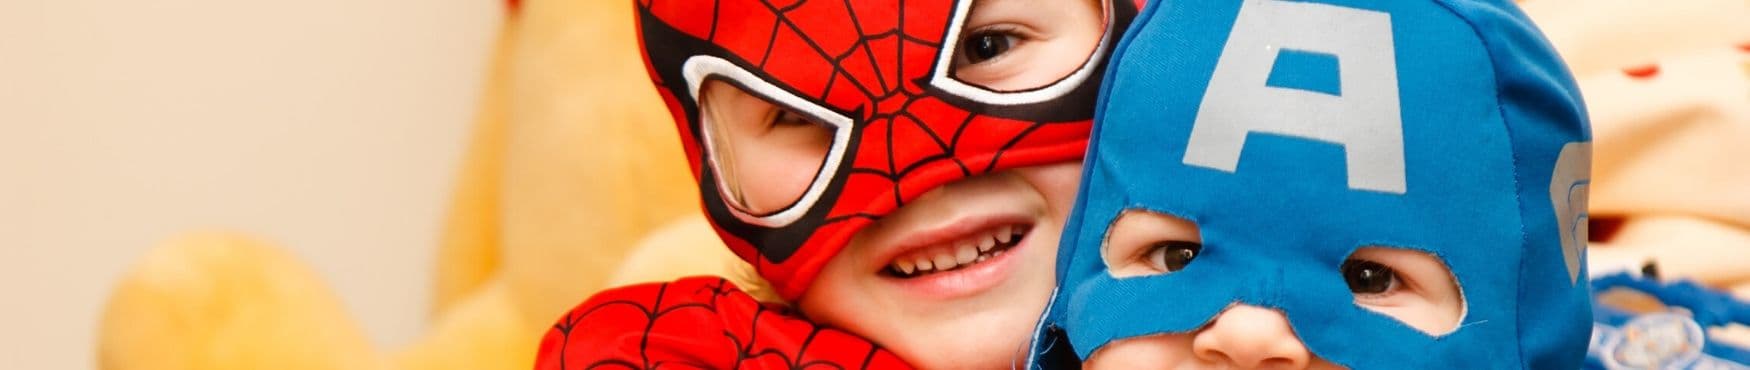 Top 5 des peignoirs super-héros pour enfants